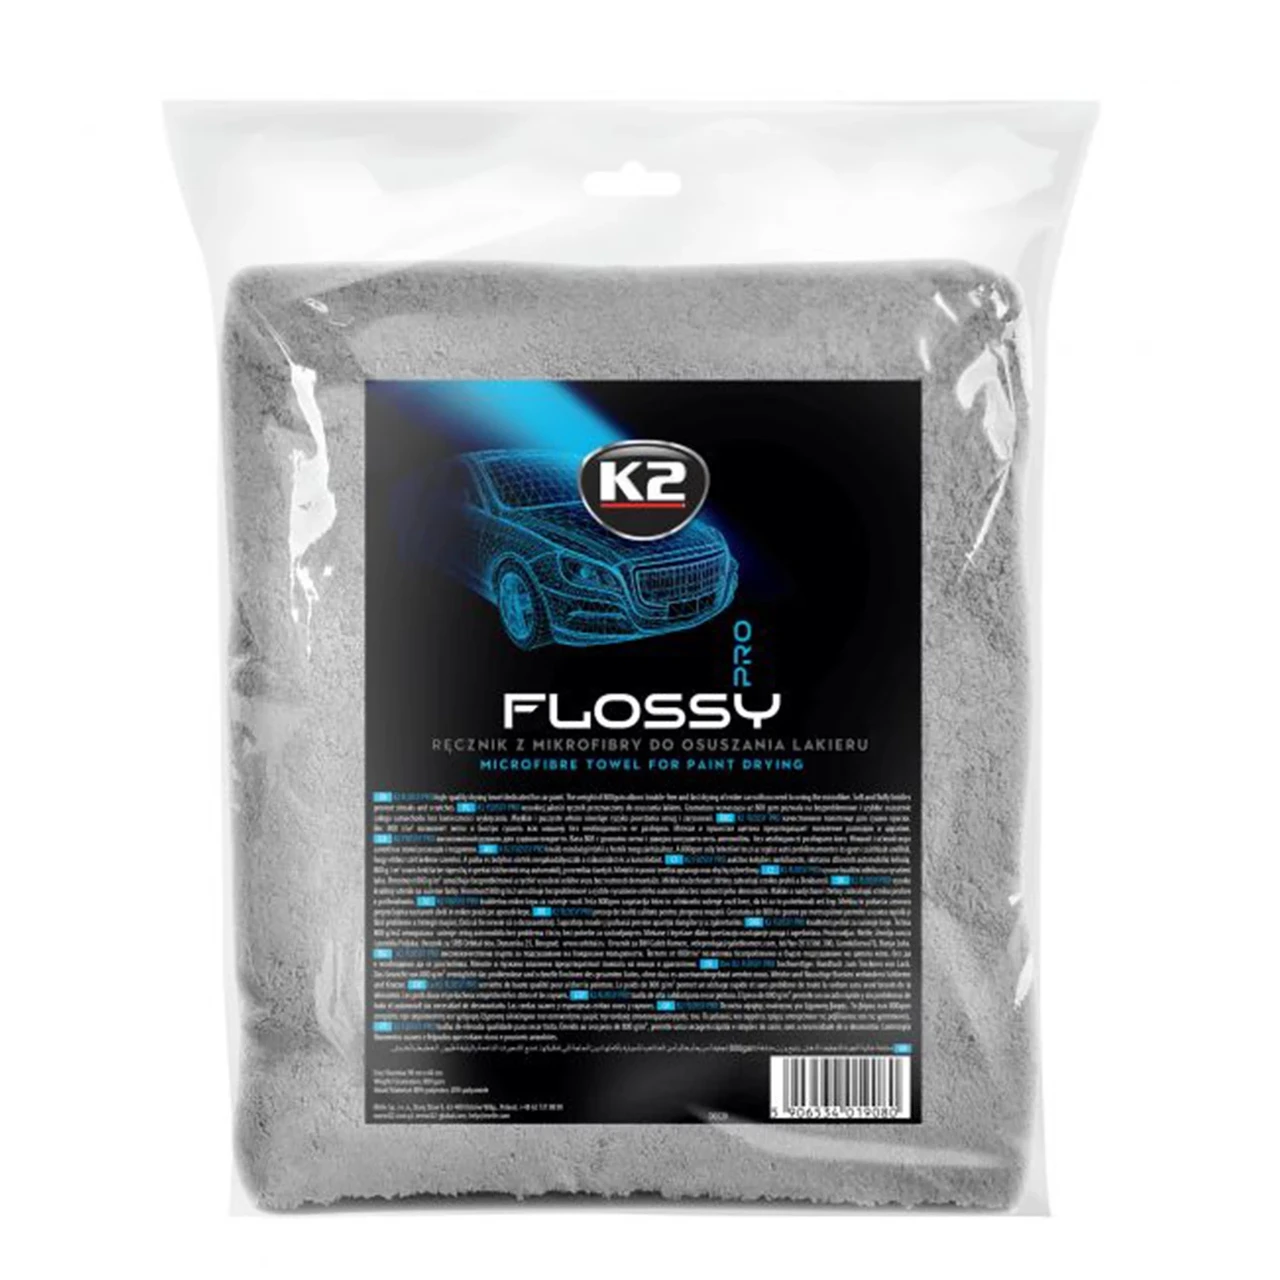 Рушник з мікрофібри для сушки лакофарб поверхні, трикотаж K2 FLOSSY PRO 90*60 с